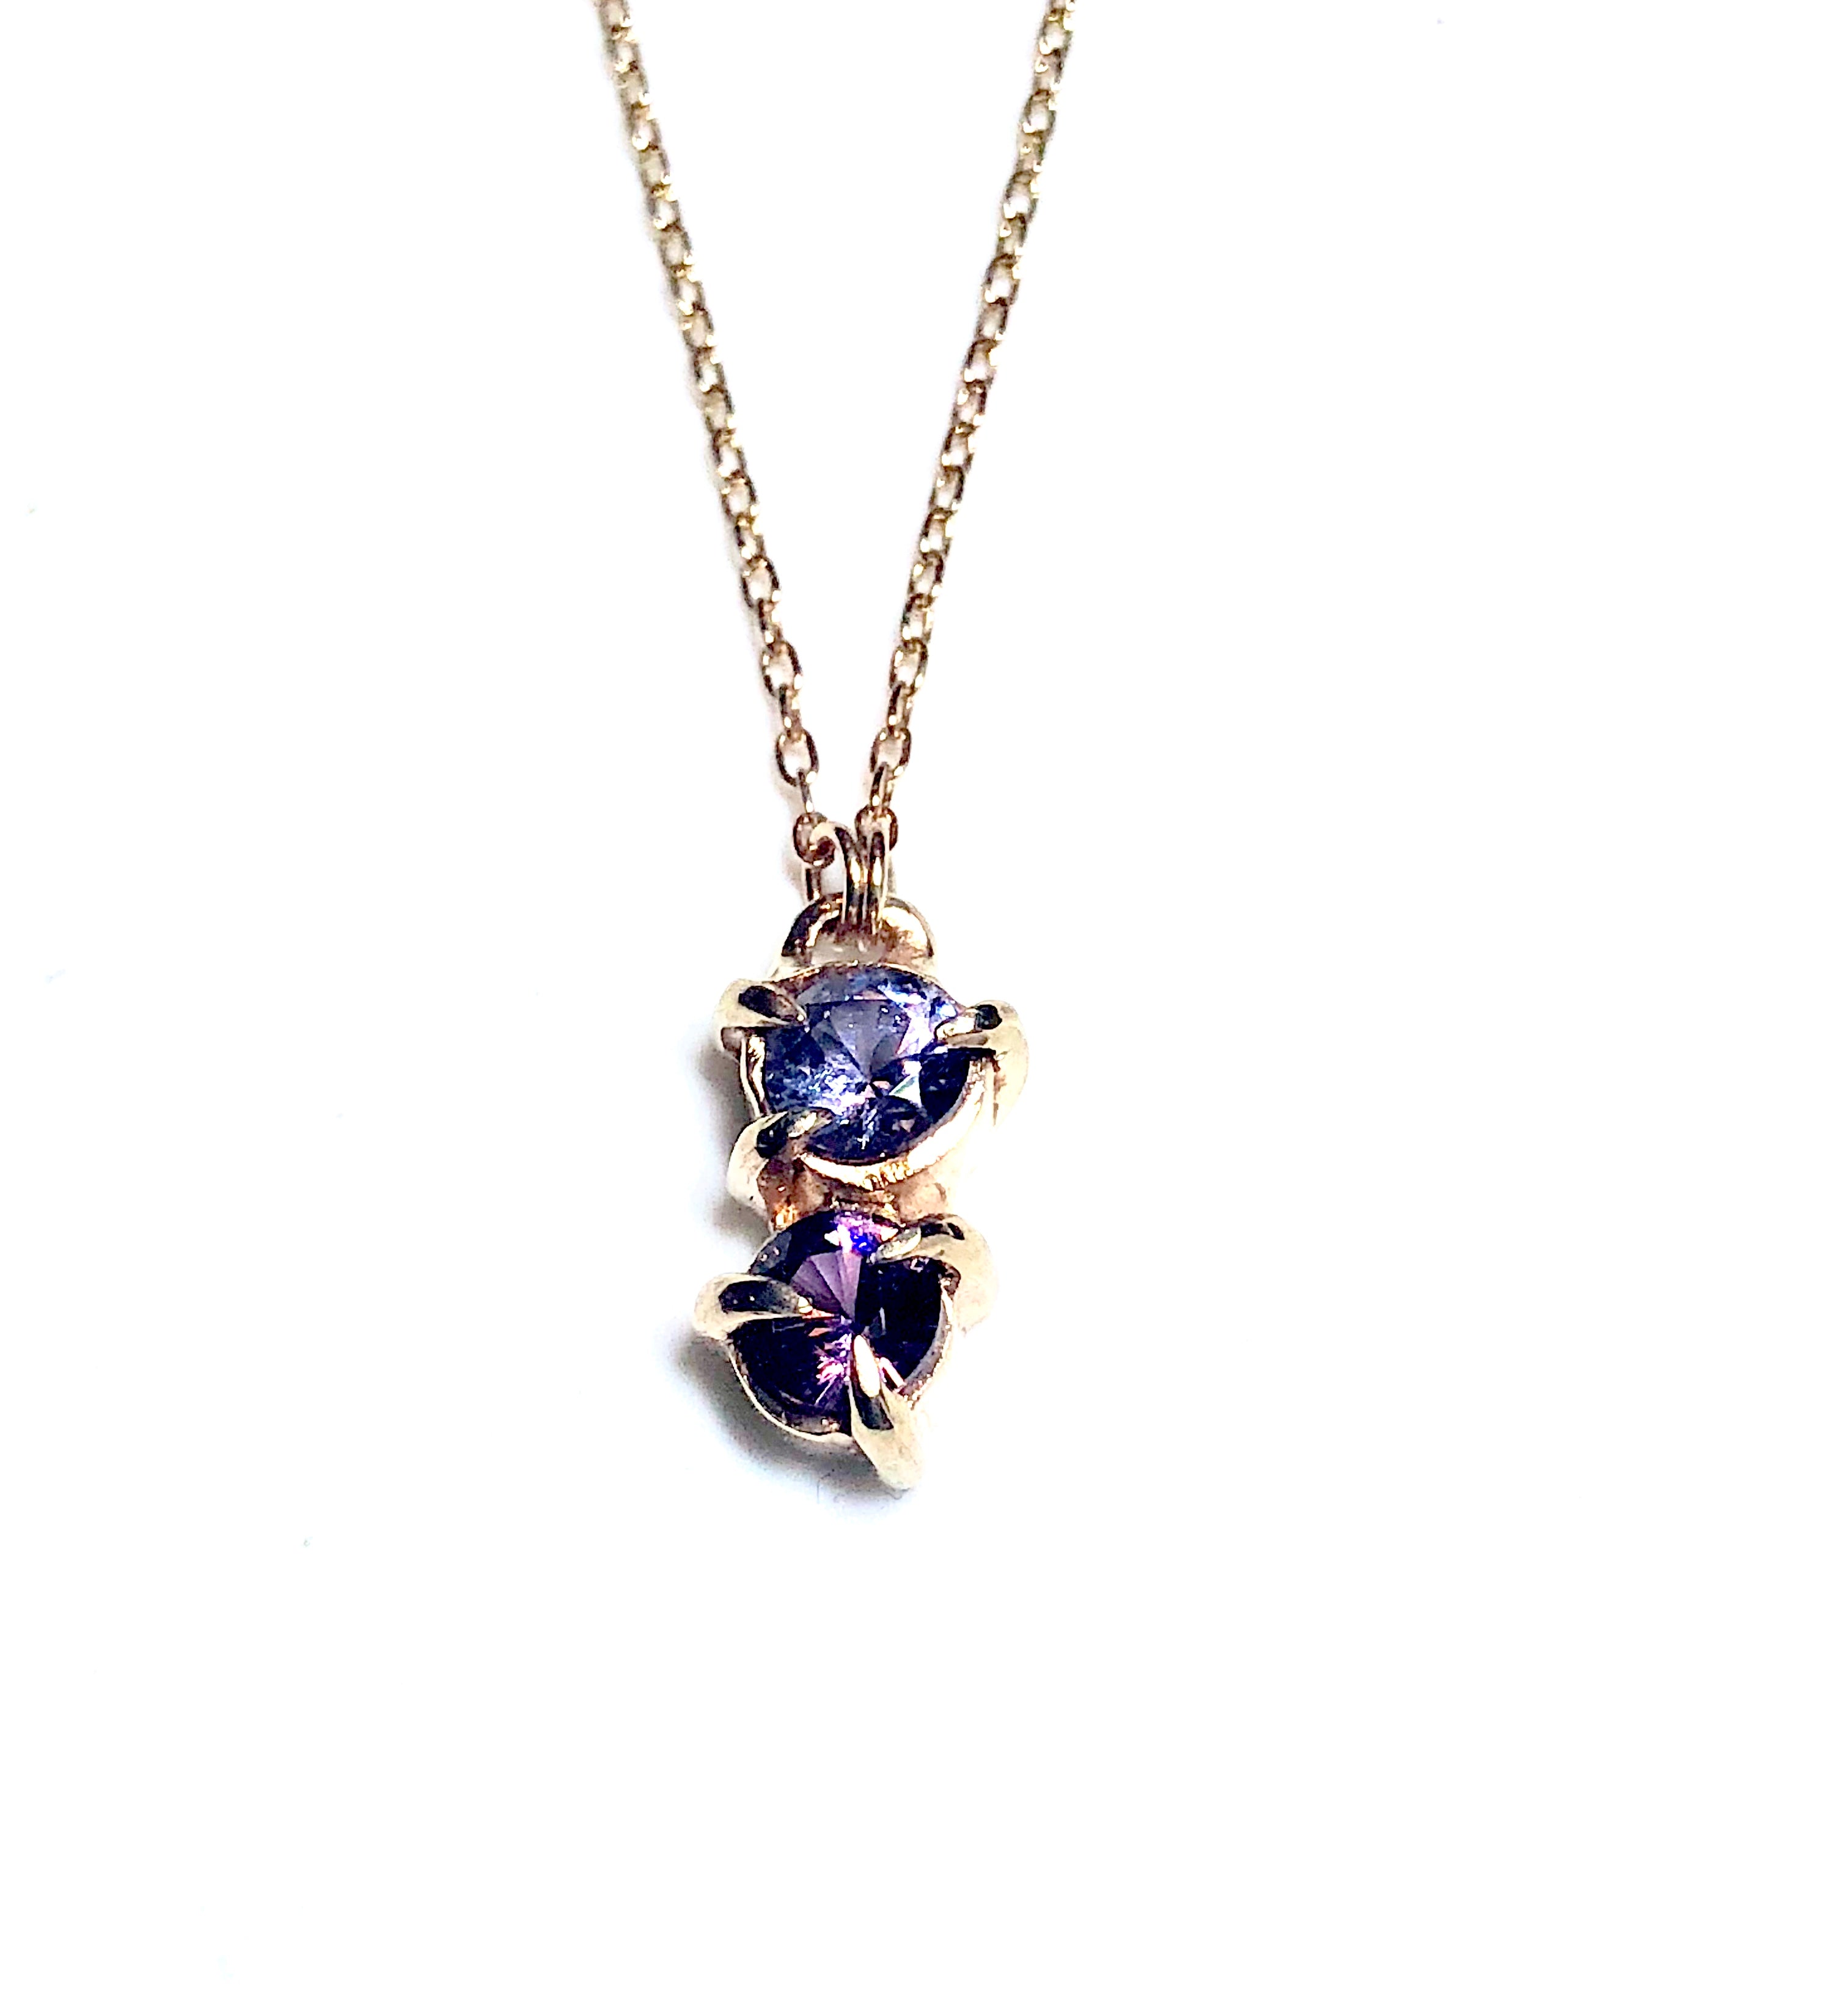 Ultra Violet Spinel Necklace in 14K Gold